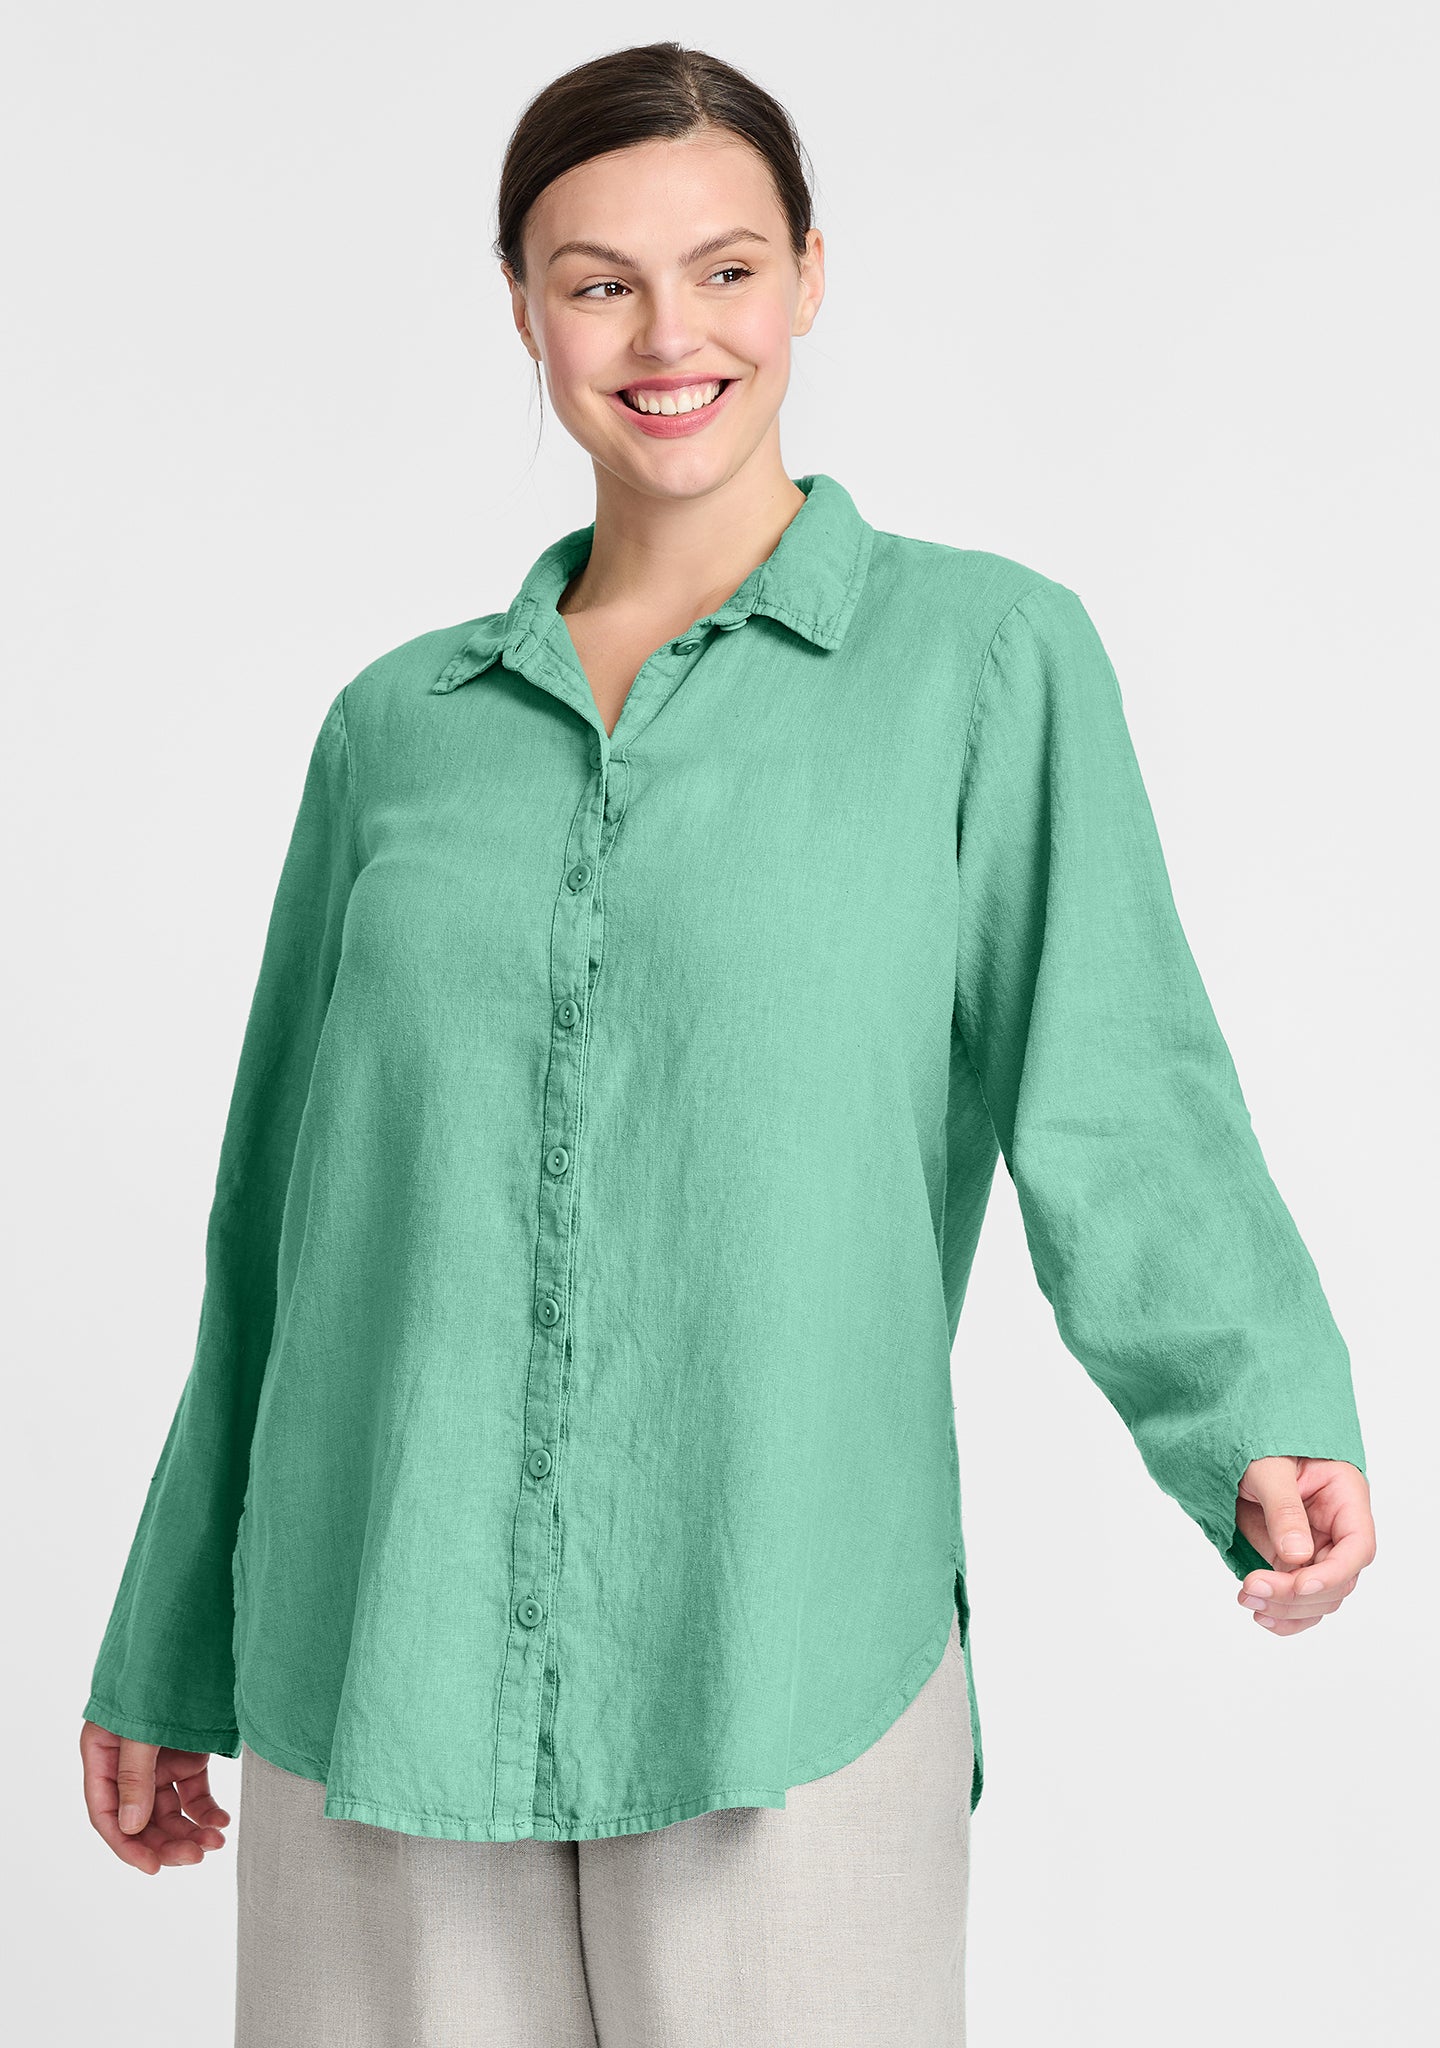 crossroads blouse linen button down shirt green